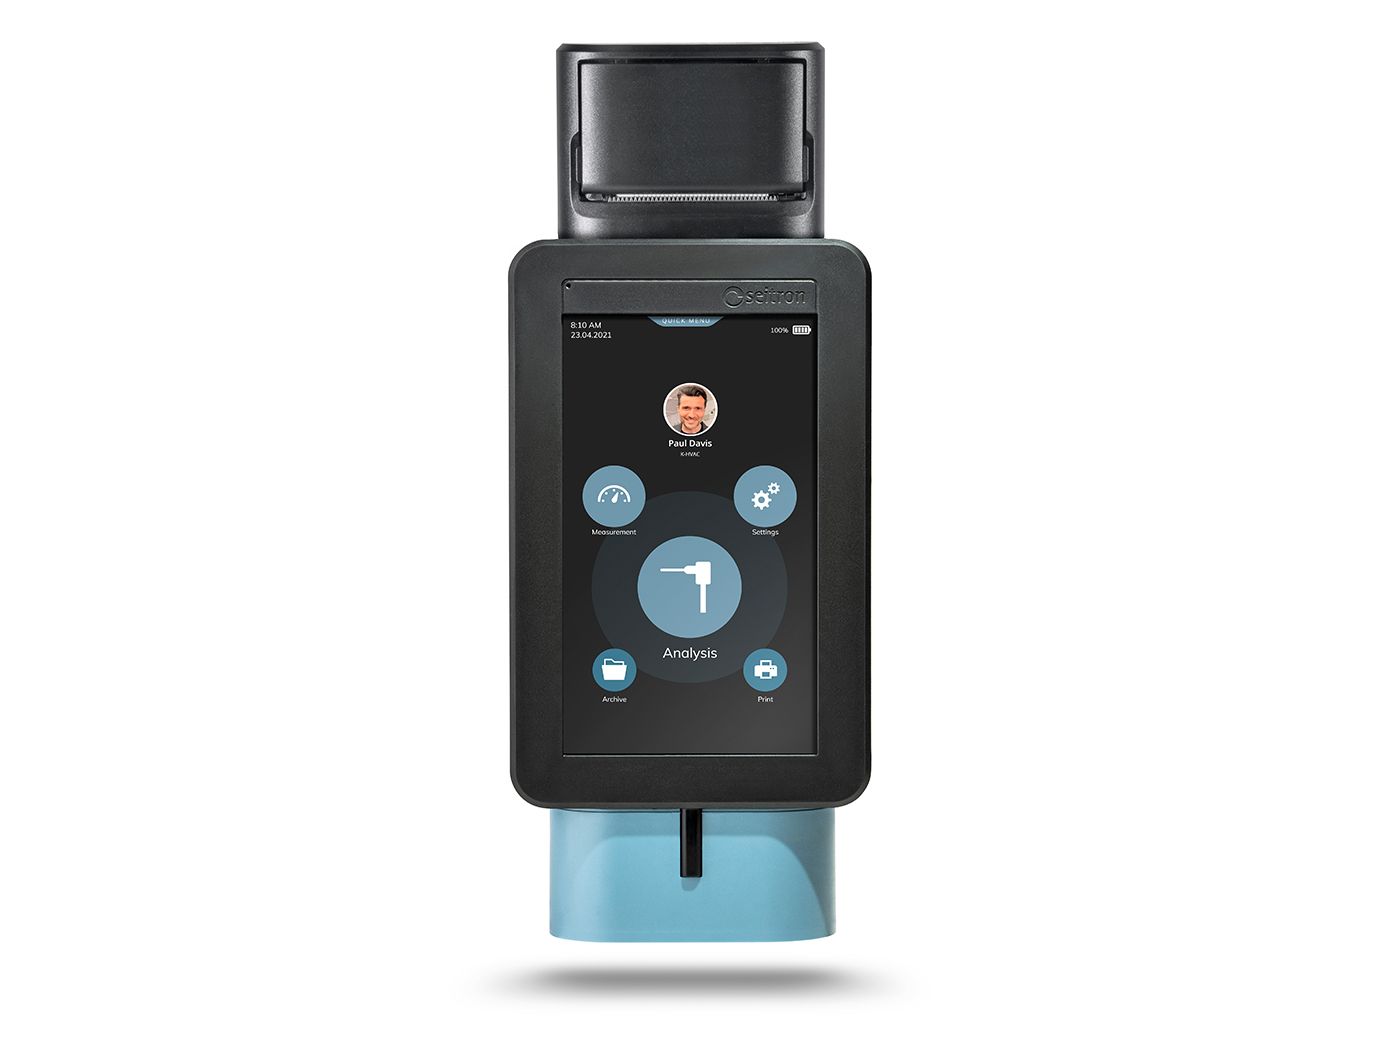 Seitron Novo 2-P analizzatore portatile di combustione - fumi 02, CO con stampante integrata